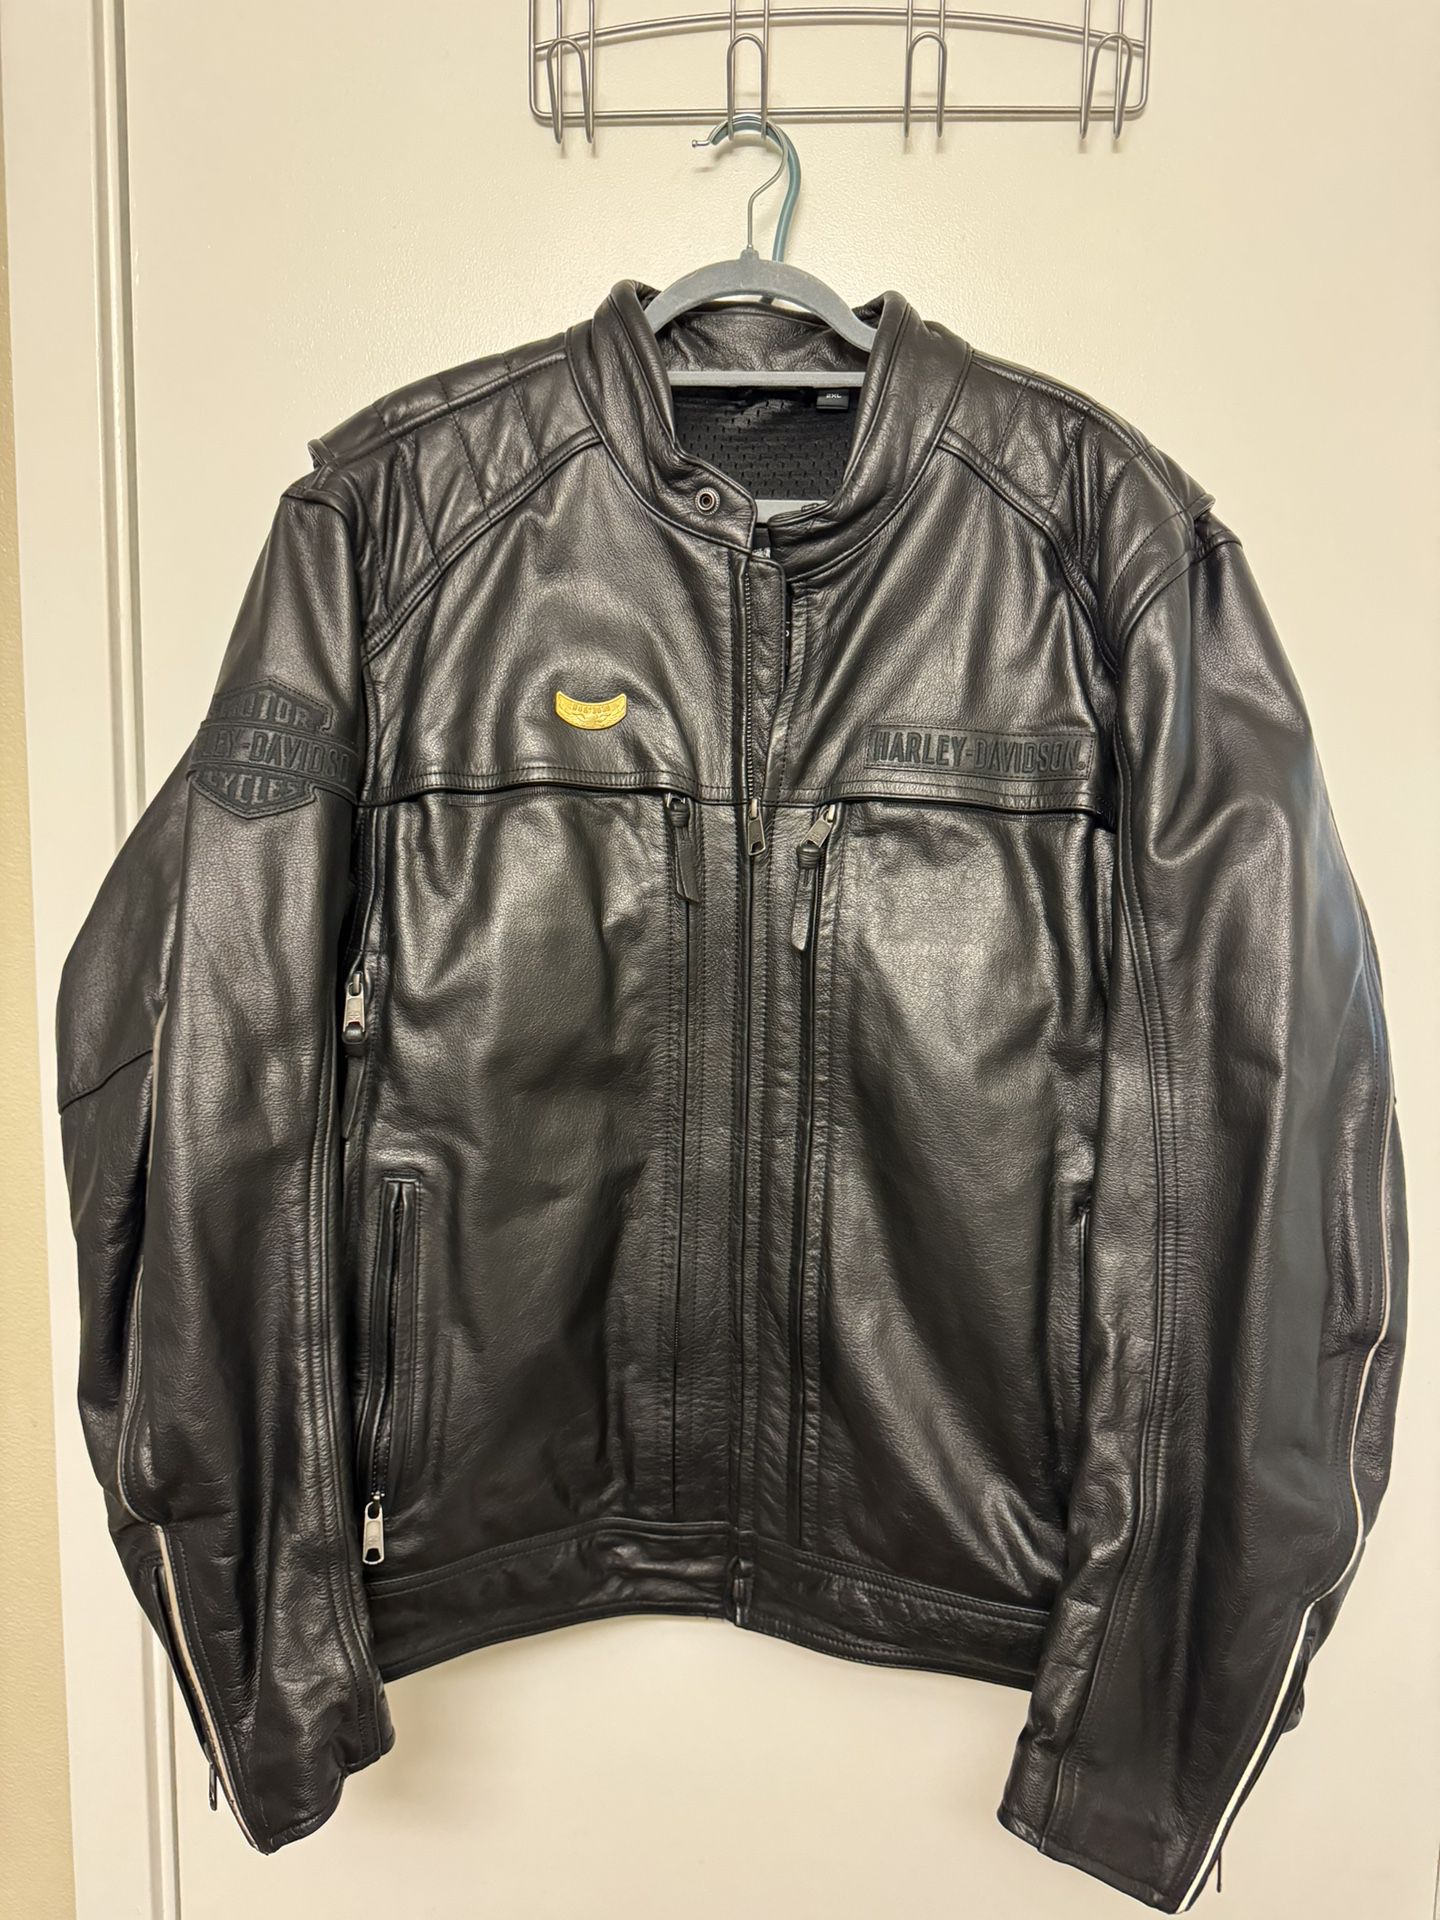 Men’s Harley Davidson Motorcycle Jacket